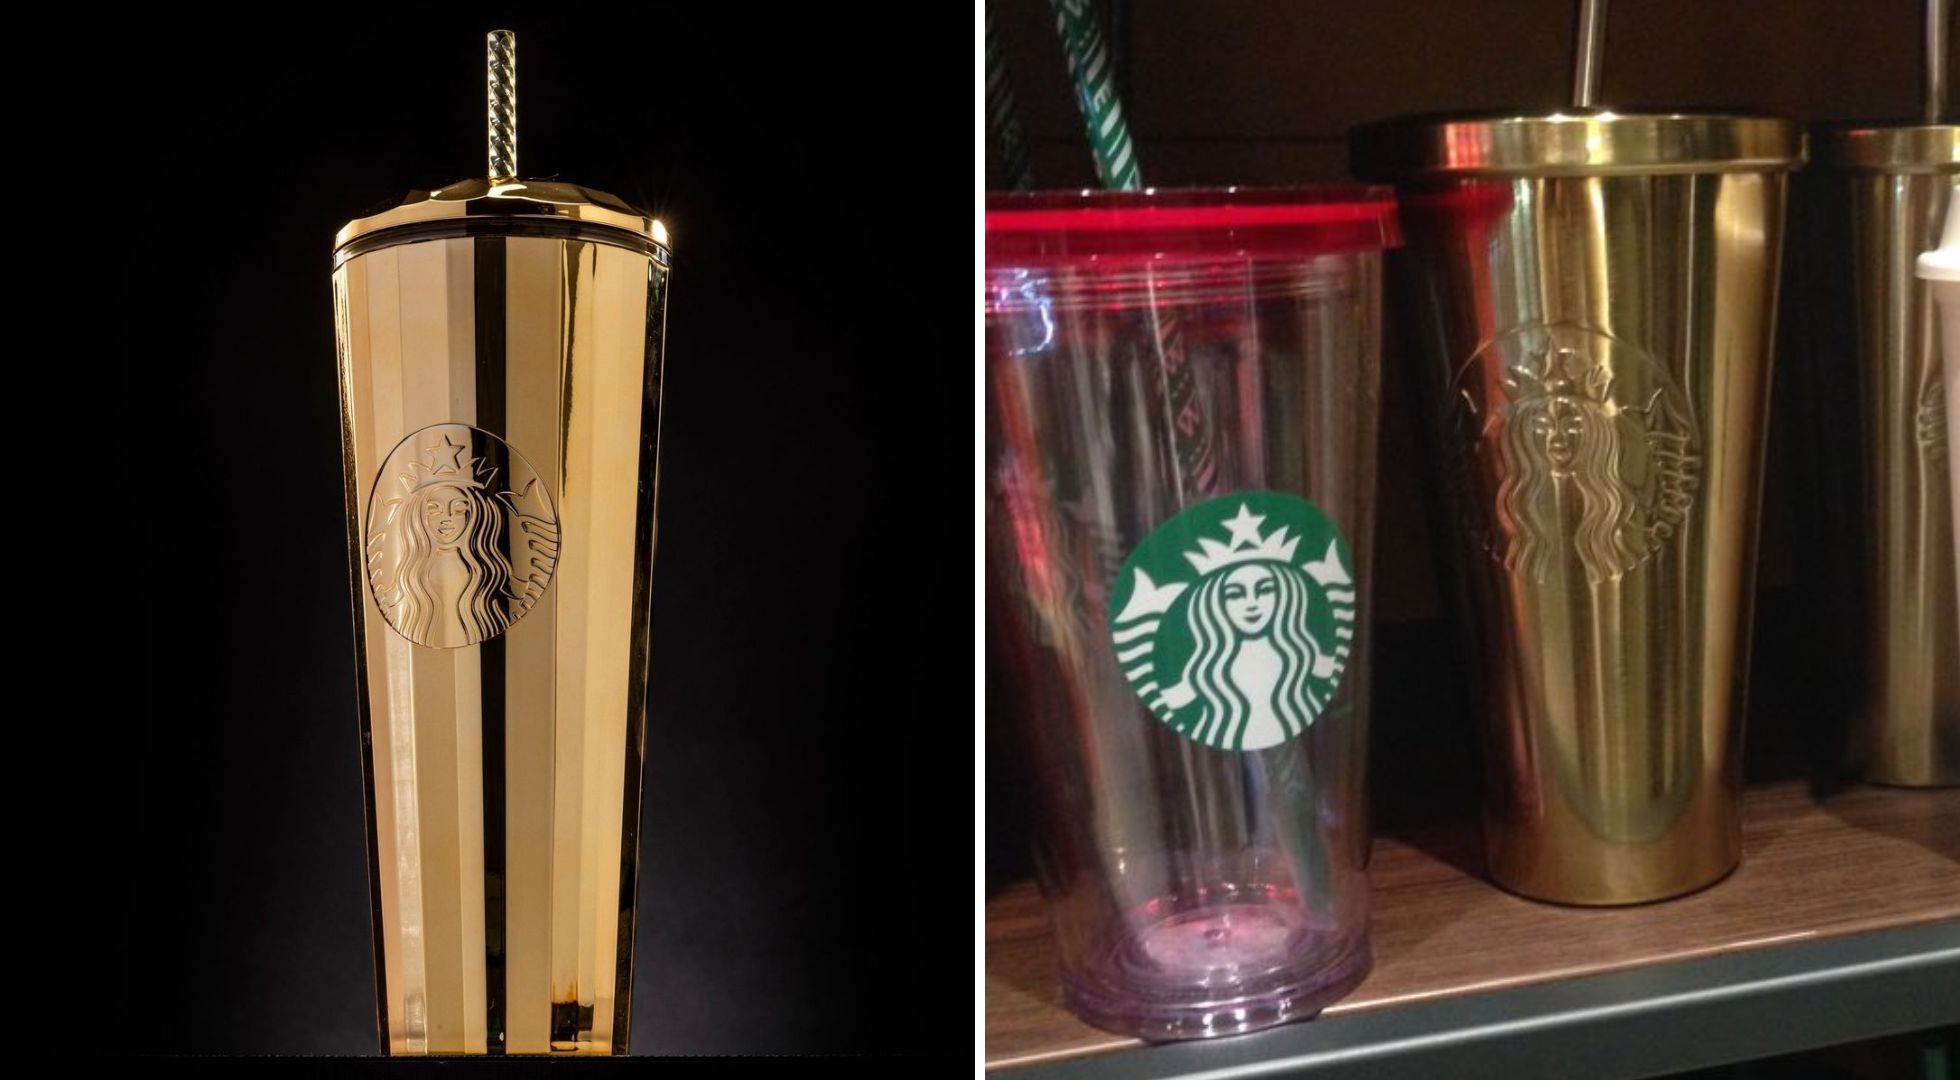 Vaso de Starbucks cambia de color; precio y cómo se ve el